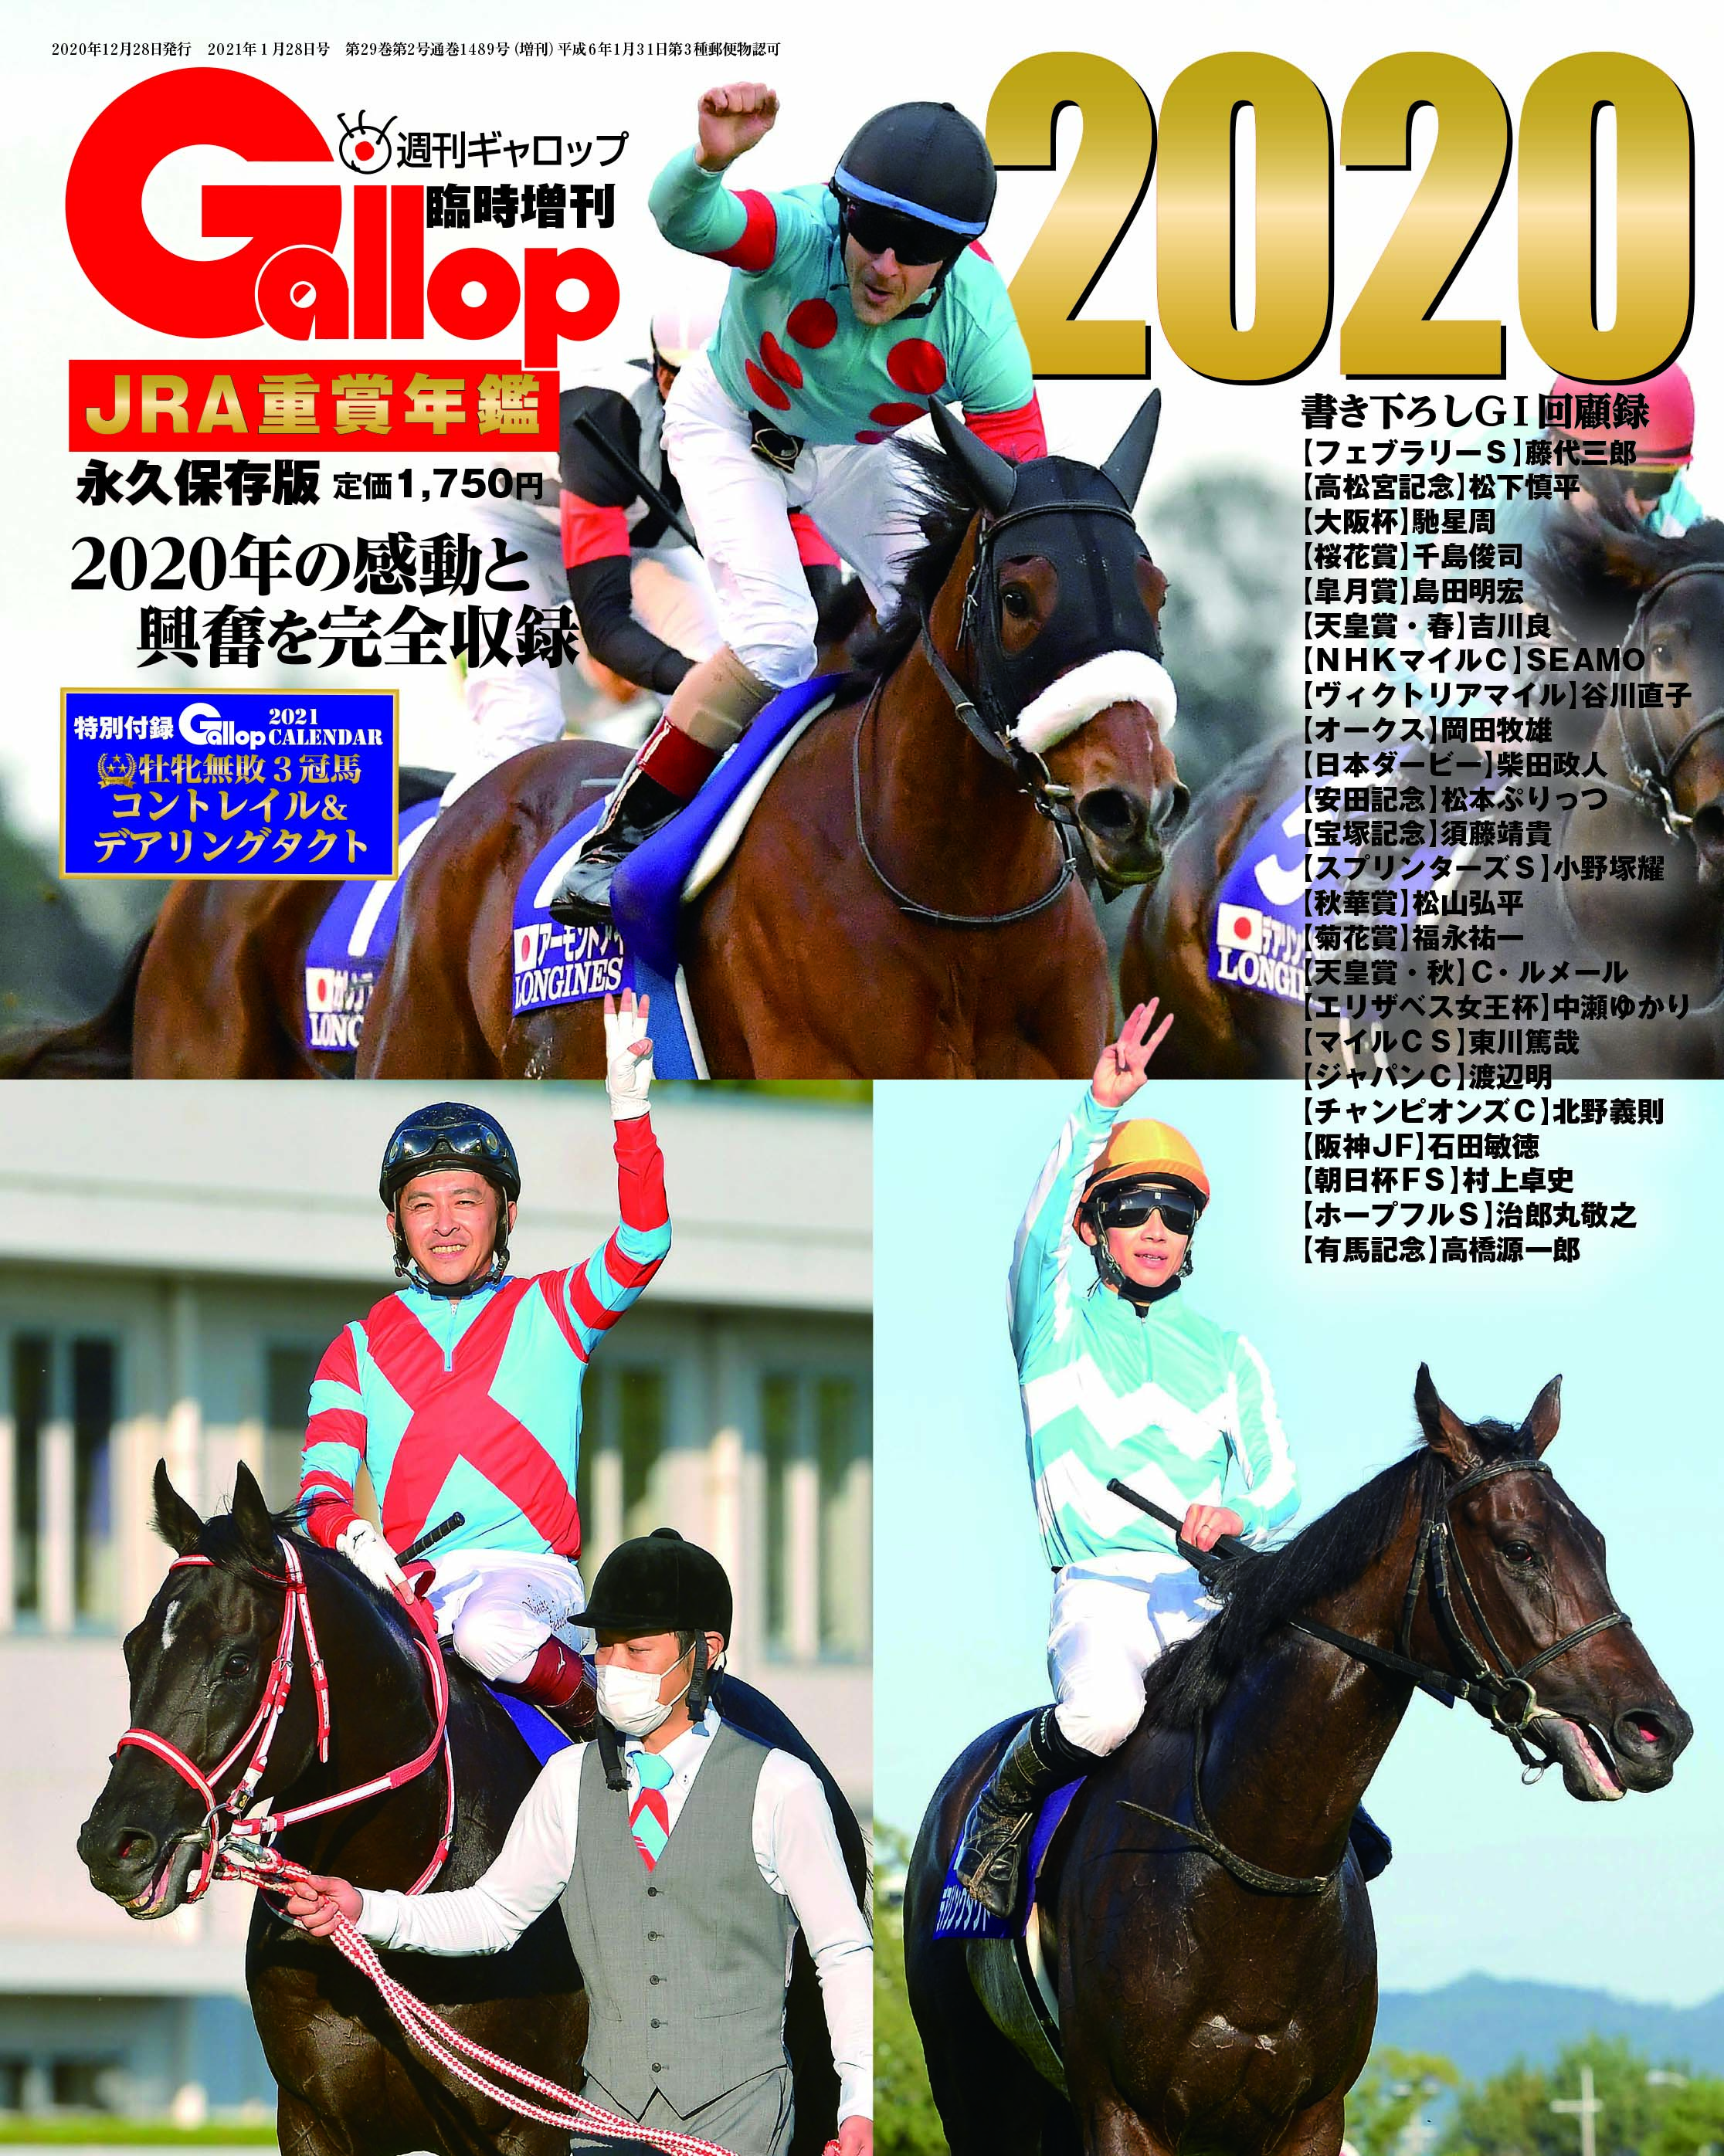 週刊GALLOP増刊号 重賞年鑑 1993〜2013 21冊セット お気に入りの htckl 